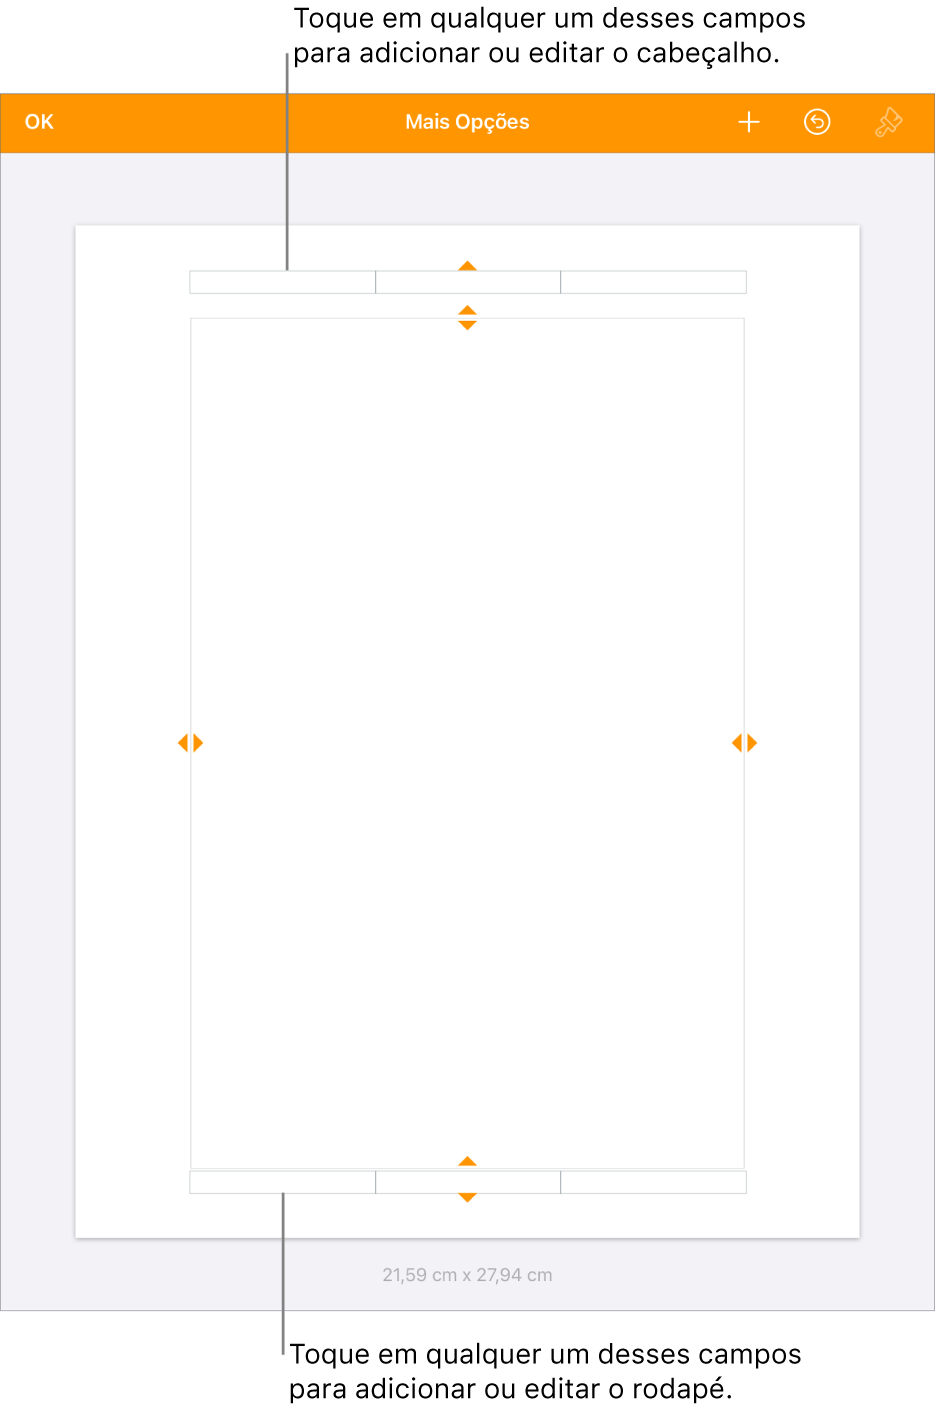 Visualização Mais Opções, com três campos na parte superior do documento para o cabeçalho e três campos na parte inferior para o rodapé.